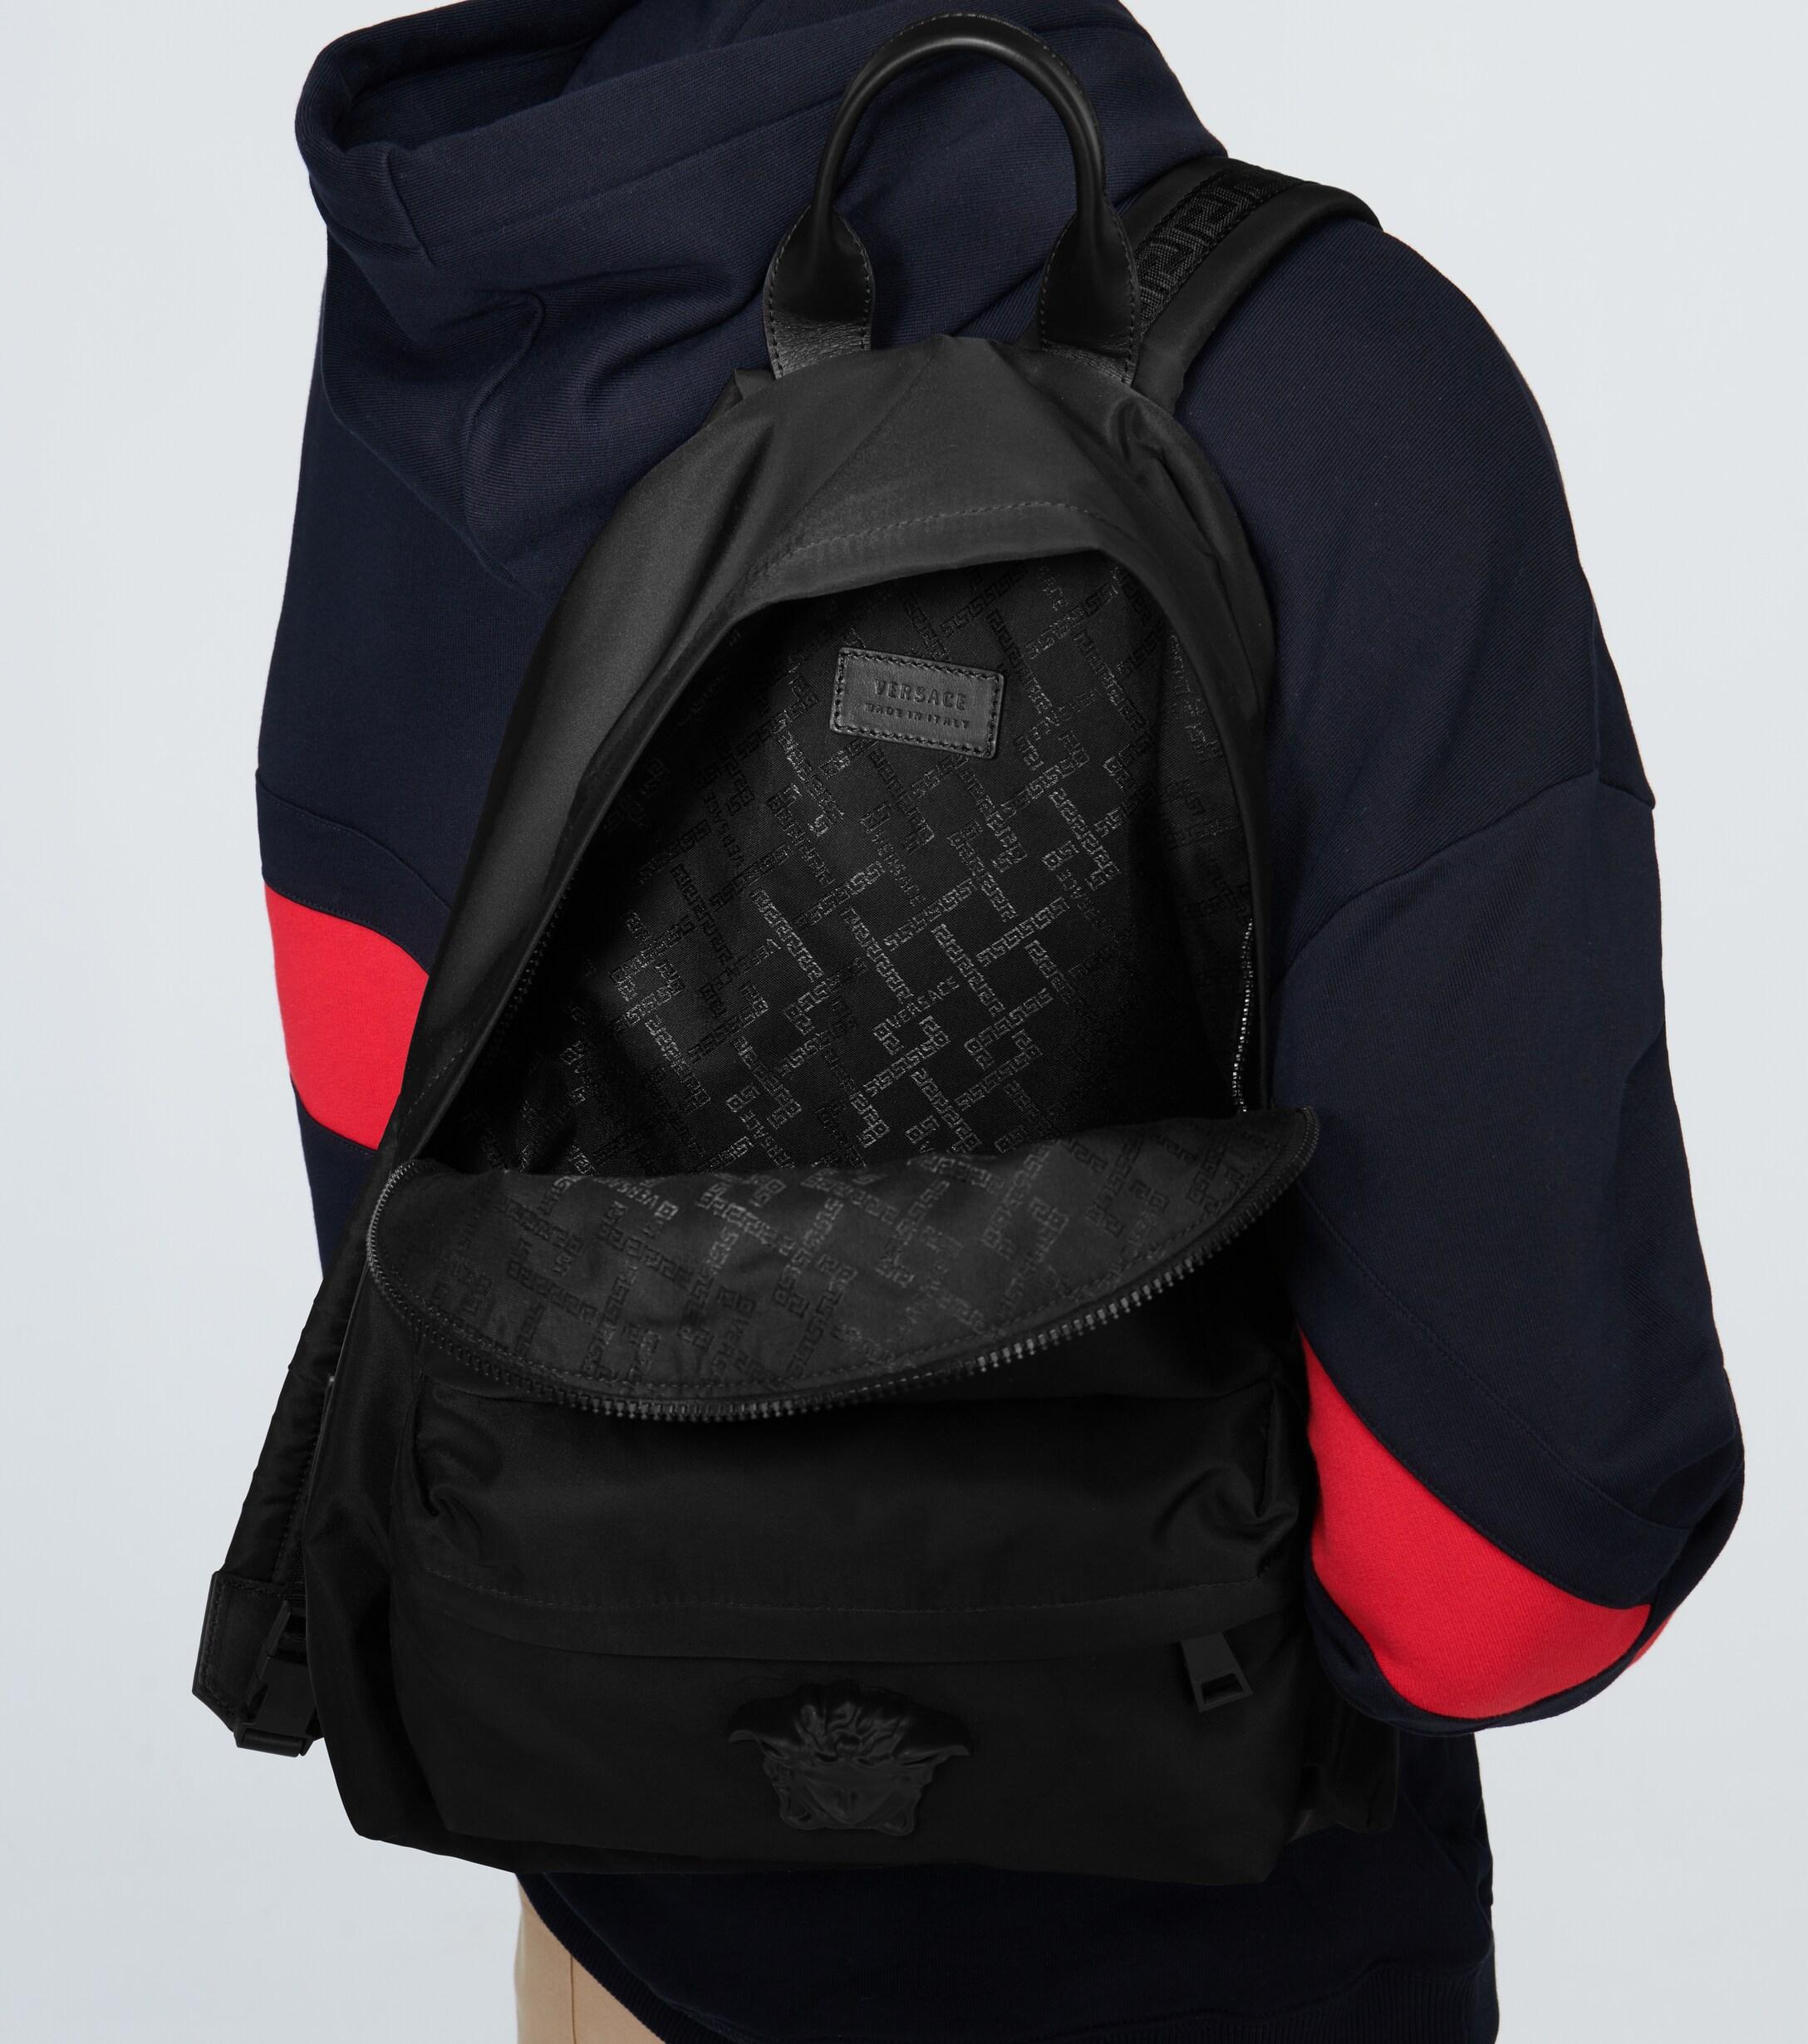 Versace Synthetic Medusa Head Nylon Backpack in Black for Men - Lyst